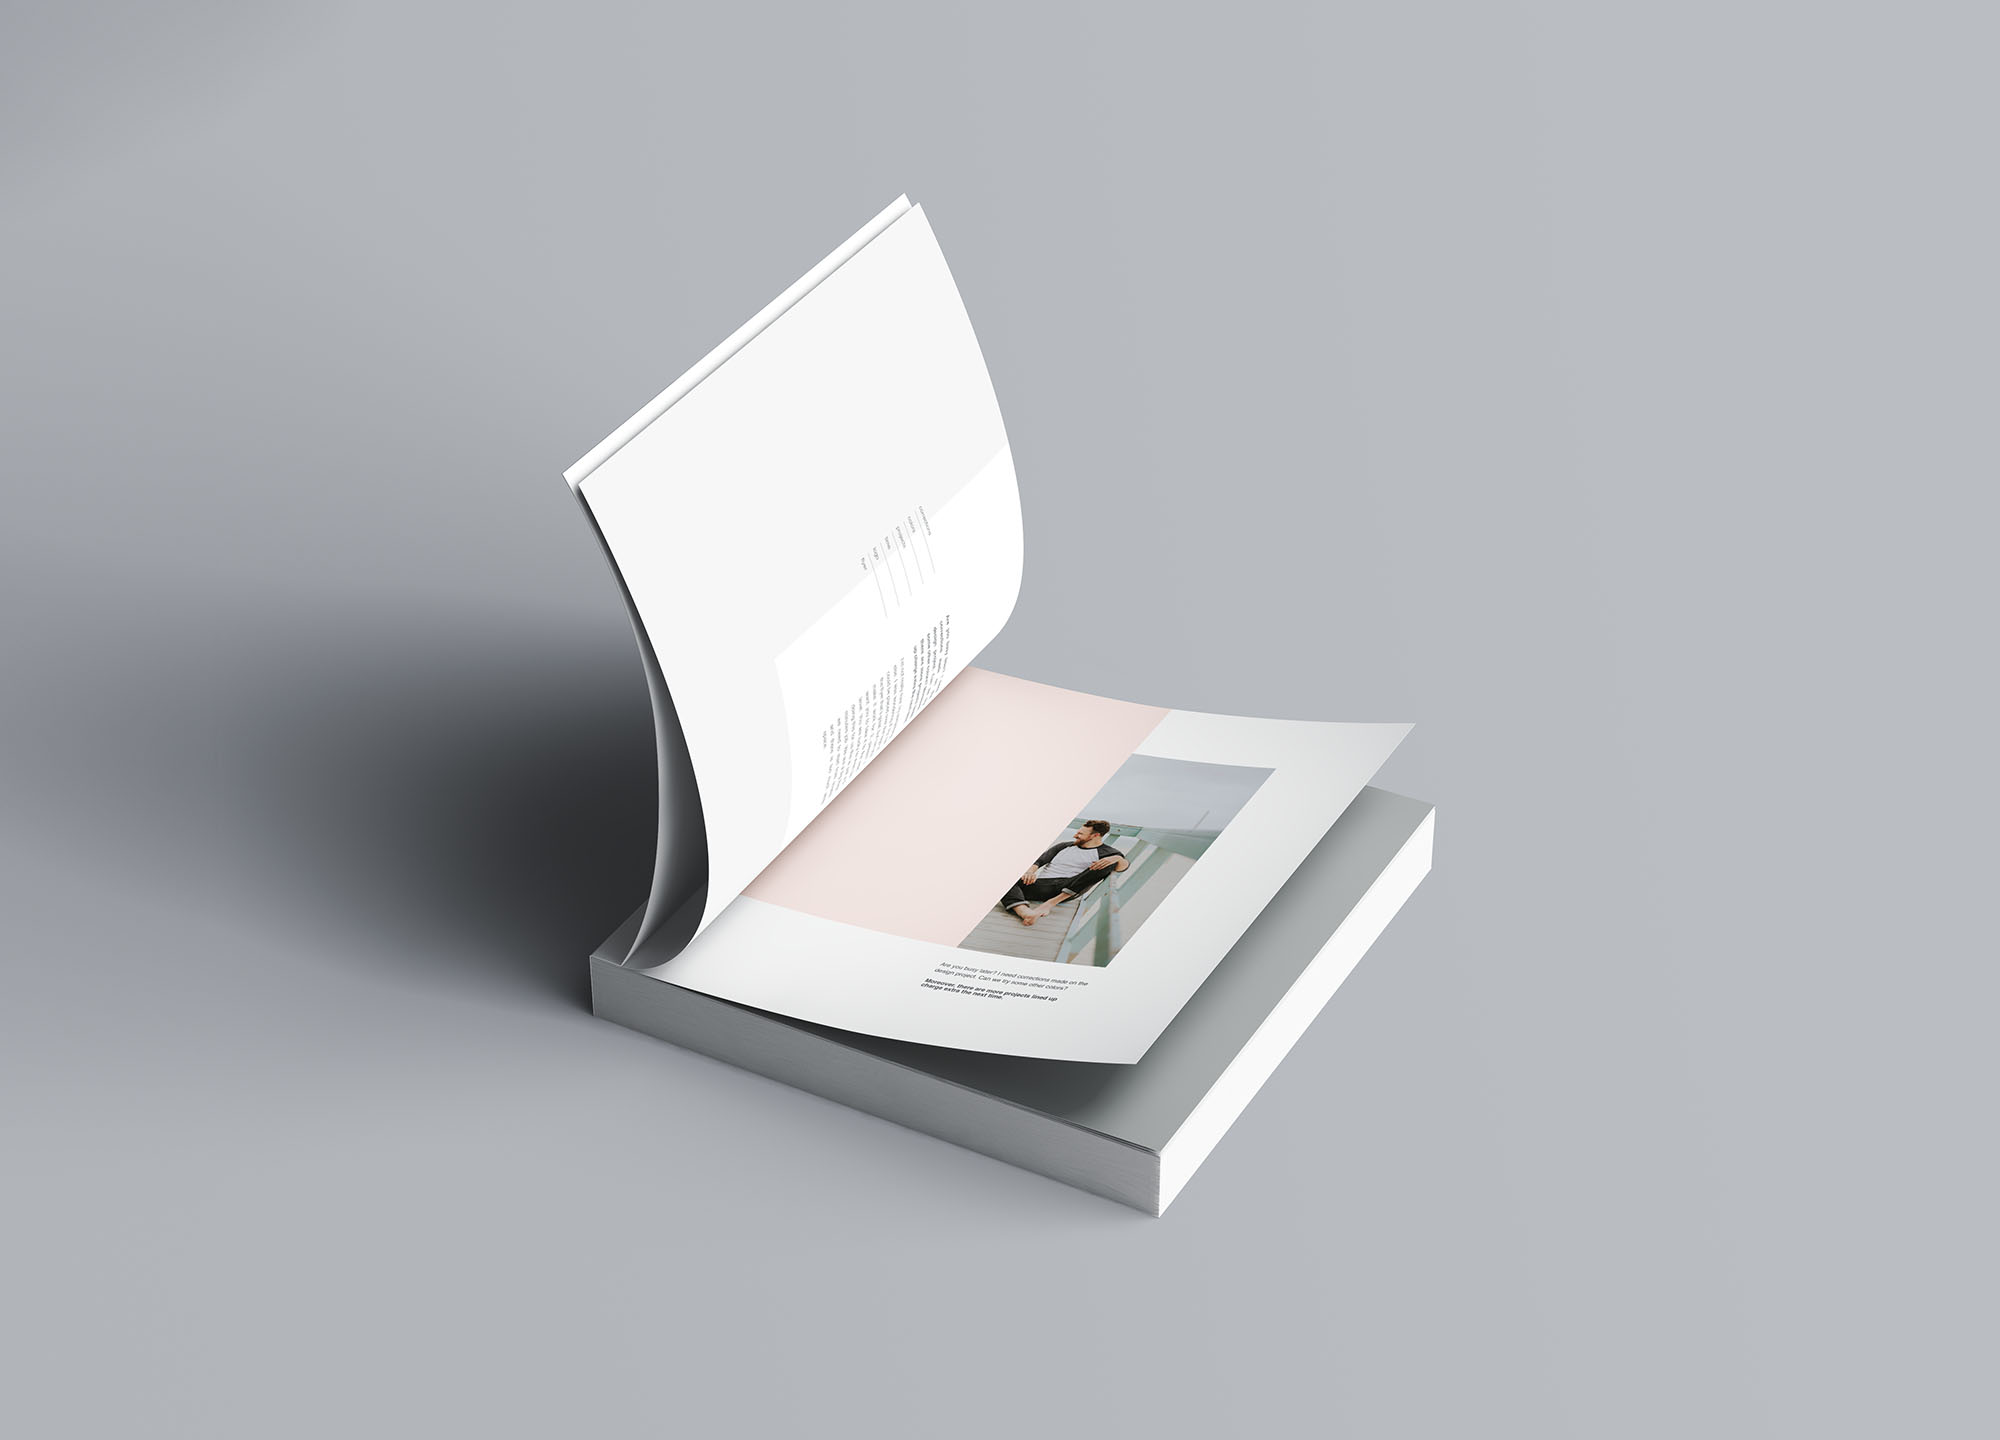 方形软封图书内页版式设计效果图样机第一素材精选 Square Softcover Book Mockup插图(5)